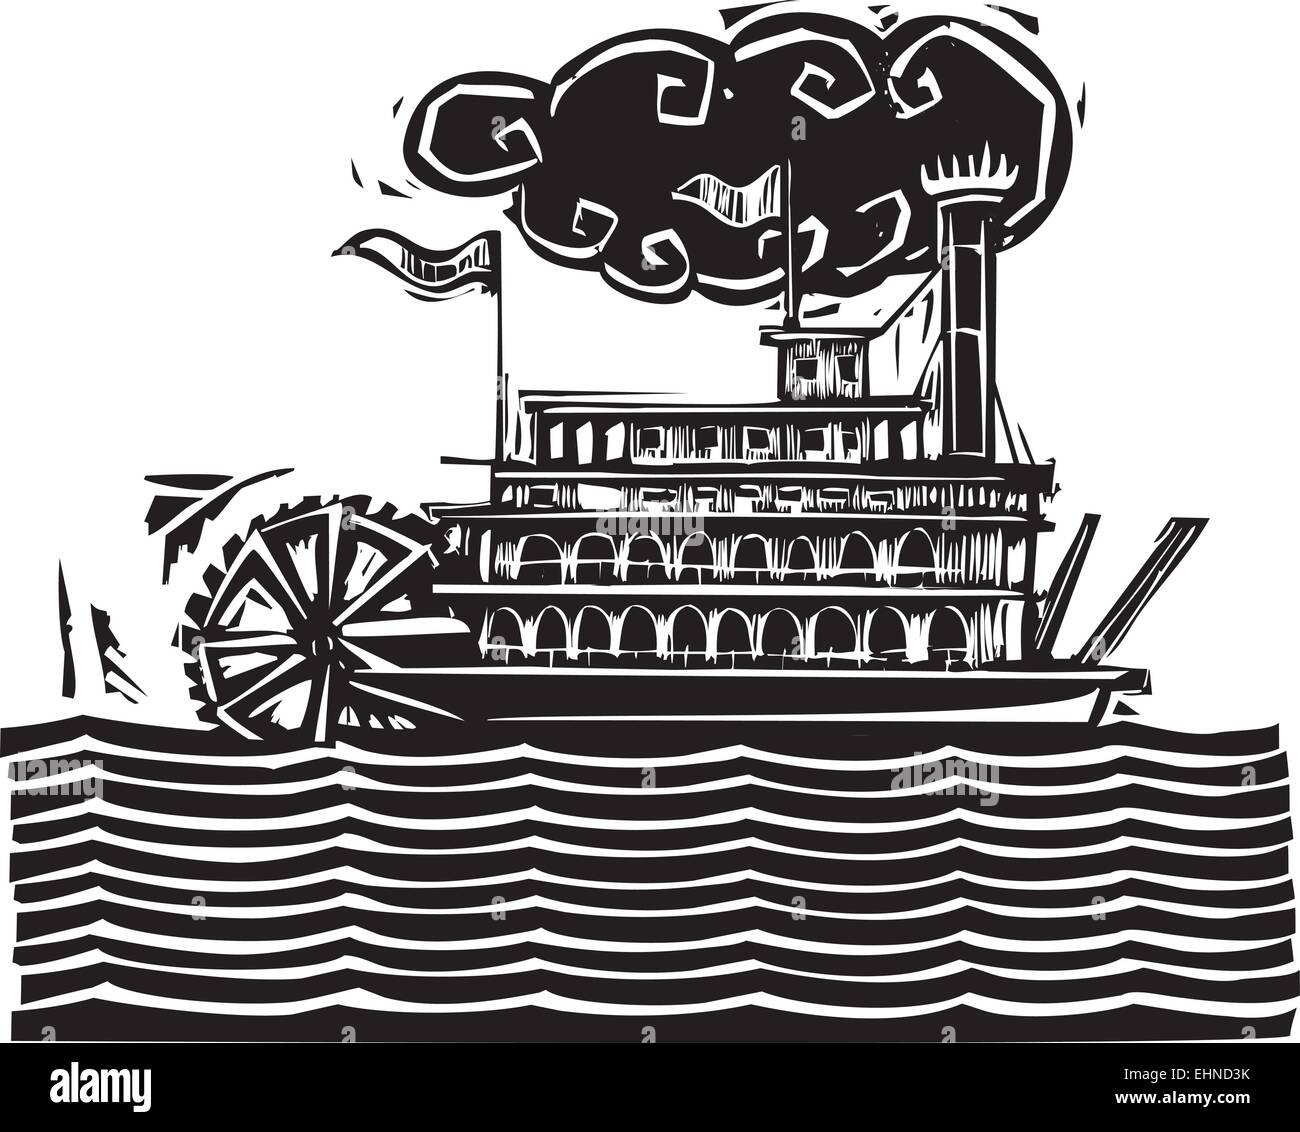 Xilografia stile ruota sul lato del fiume Mississippi steamboat sulle onde stilizzate. Illustrazione Vettoriale